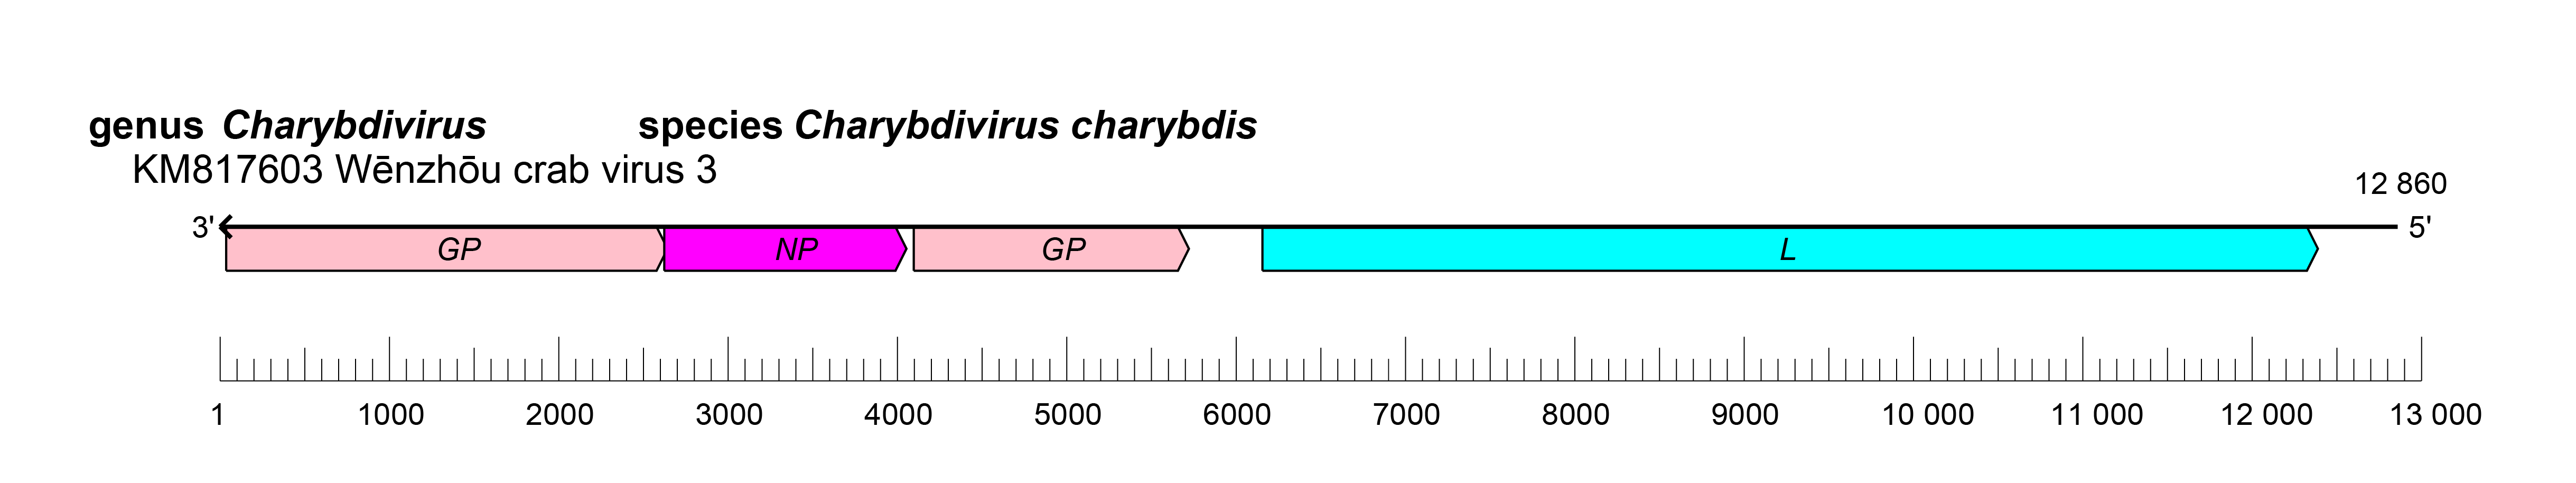 Natareviridae genome